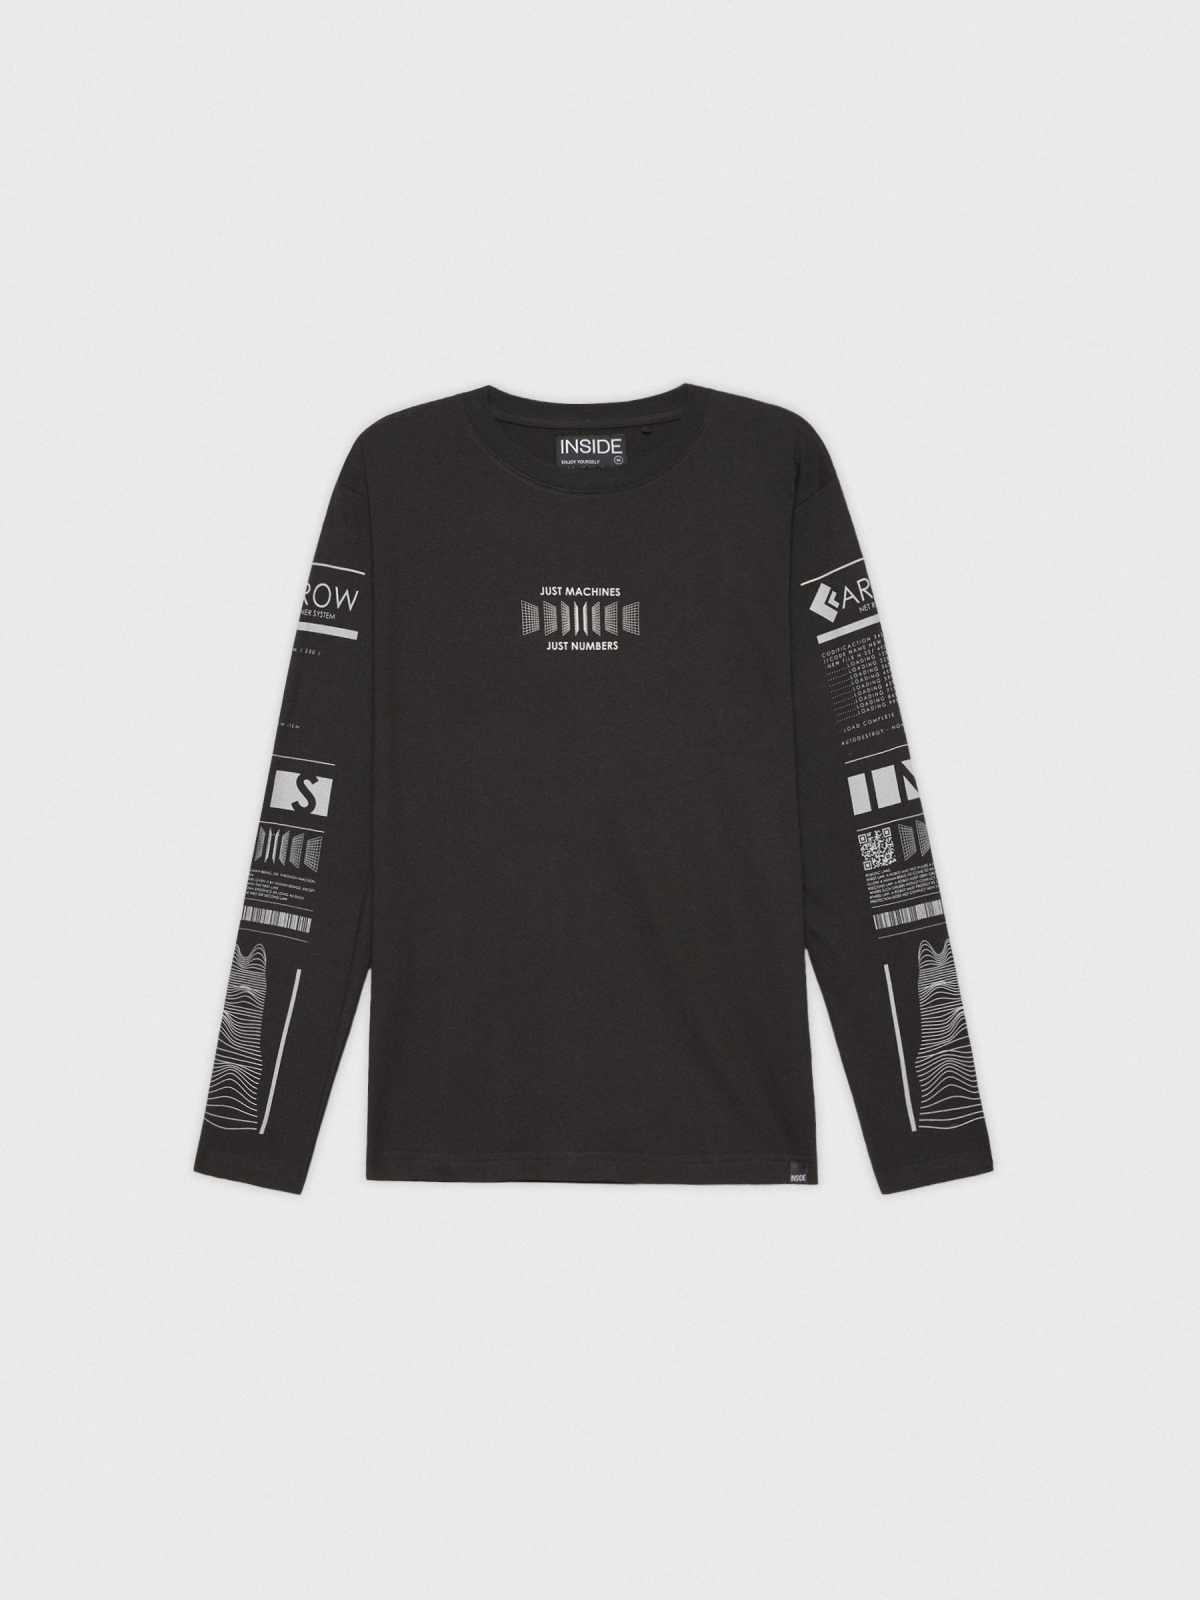  T-shirt com estampado Cyber nas mangas preto